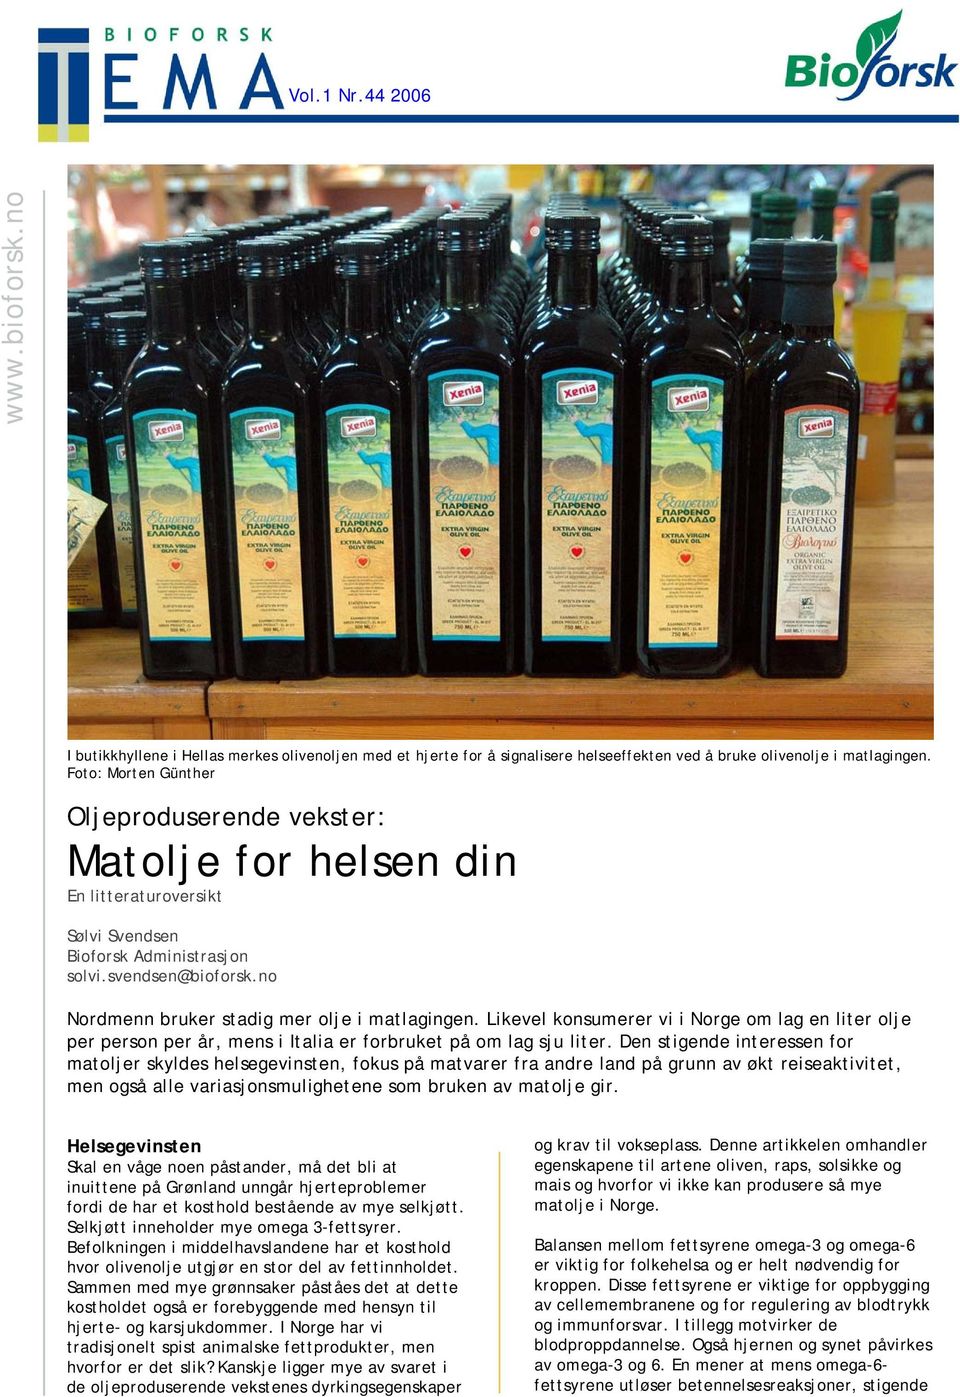 no Nordmenn bruker stadig mer olje i matlagingen. Likevel konsumerer vi i Norge om lag en liter olje per person per år, mens i Italia er forbruket på om lag sju liter.